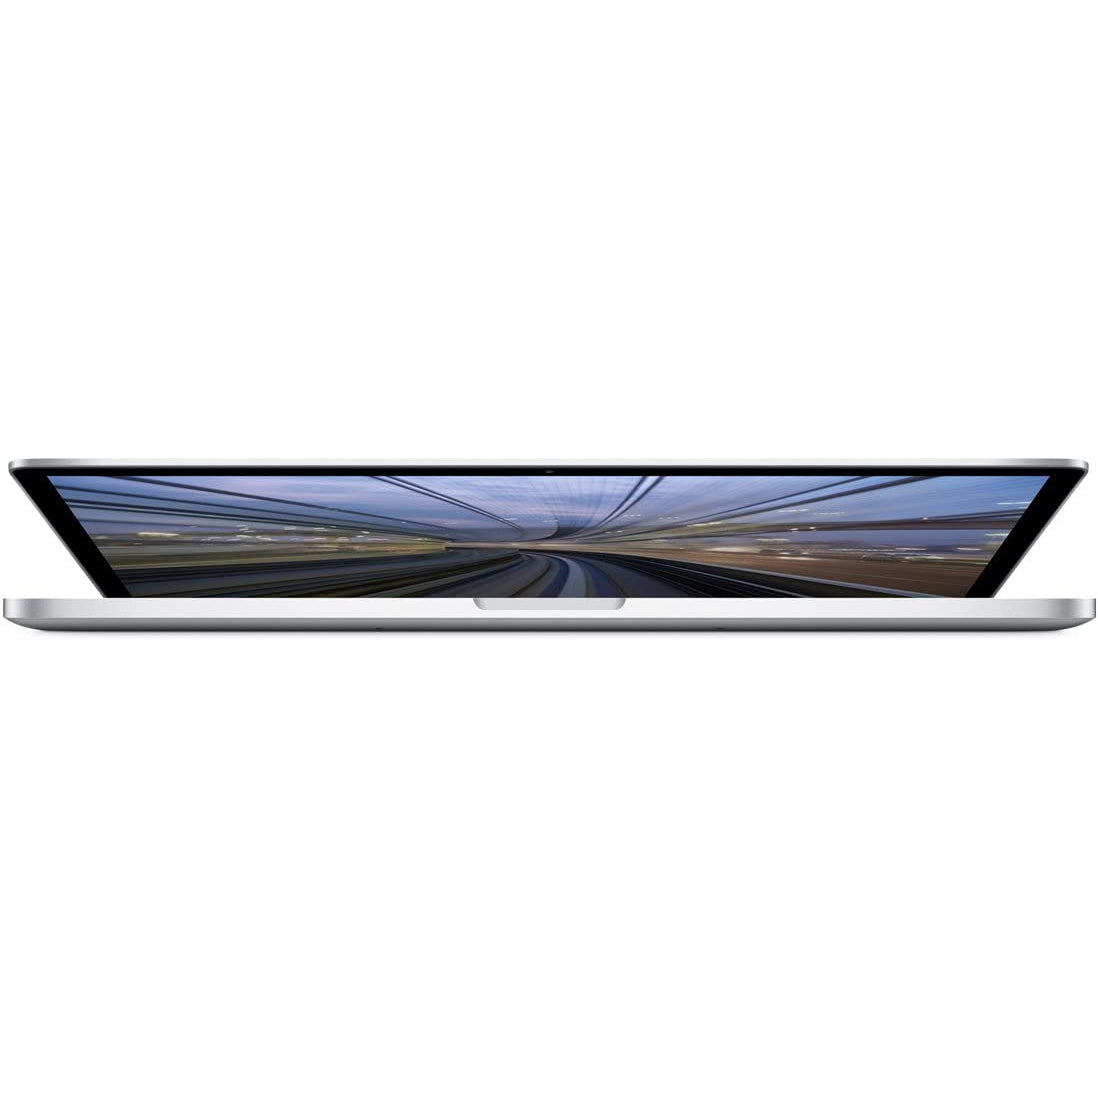 Apple MacBook Pro 13.3'' MF839LL/A (2015) Intel i5 8GB RAM 128GB SSD - Good